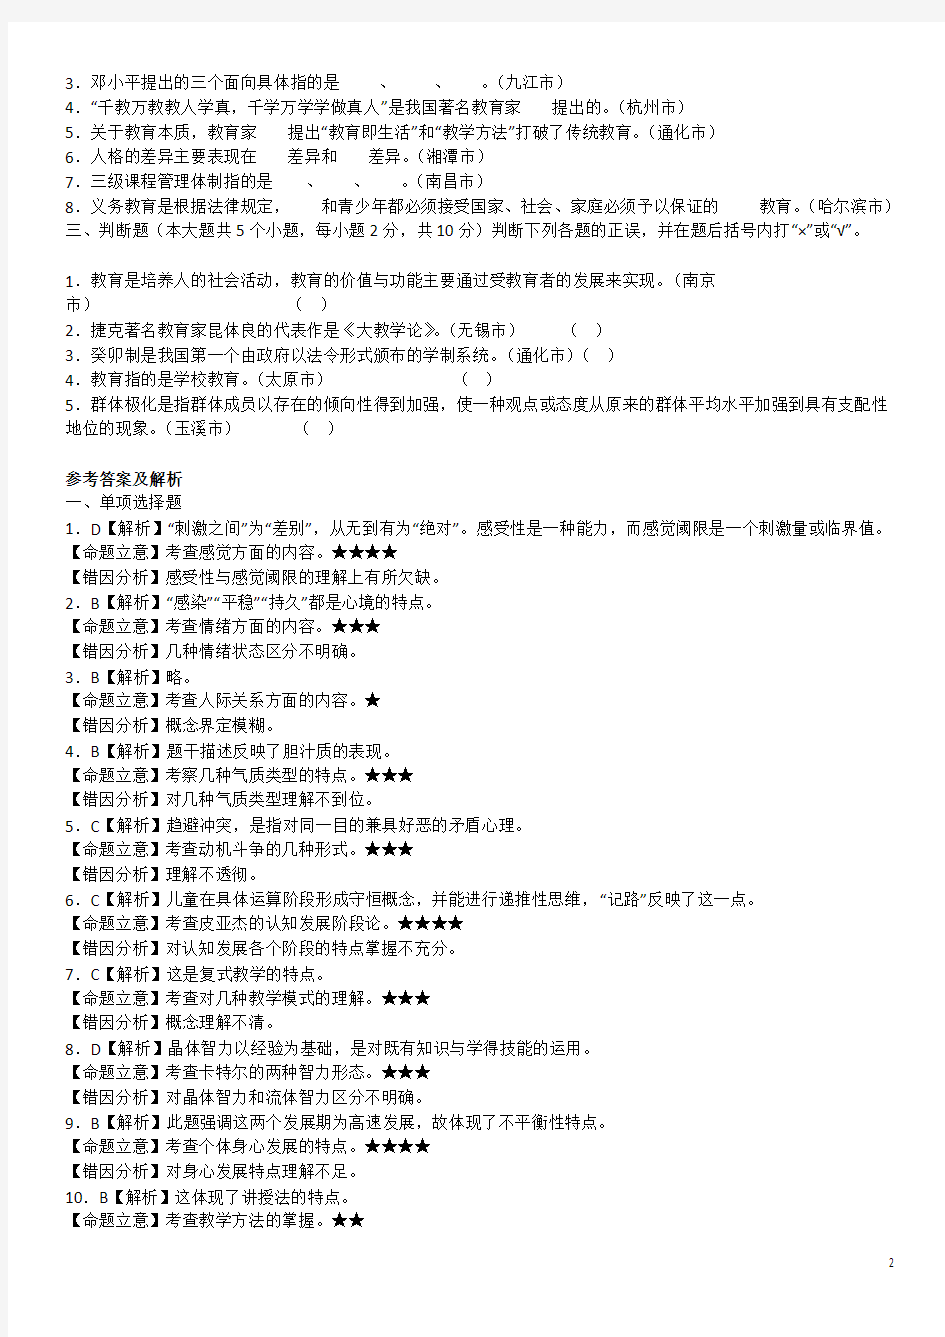 2013年河南省市教师招聘考试真题汇编试卷6套附详细答案解析客观题部分